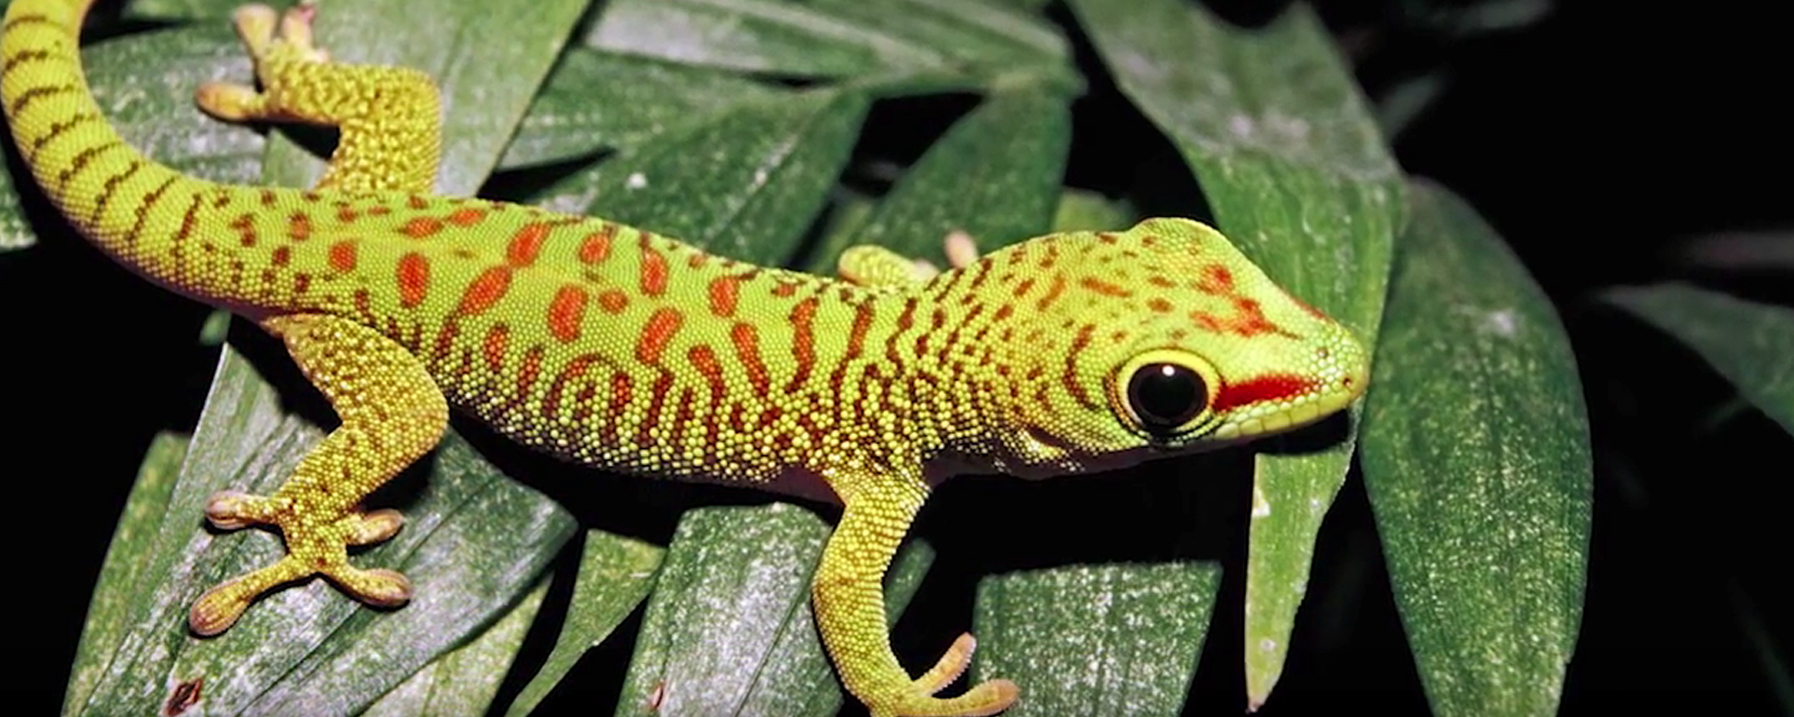 Gecko Gripper video